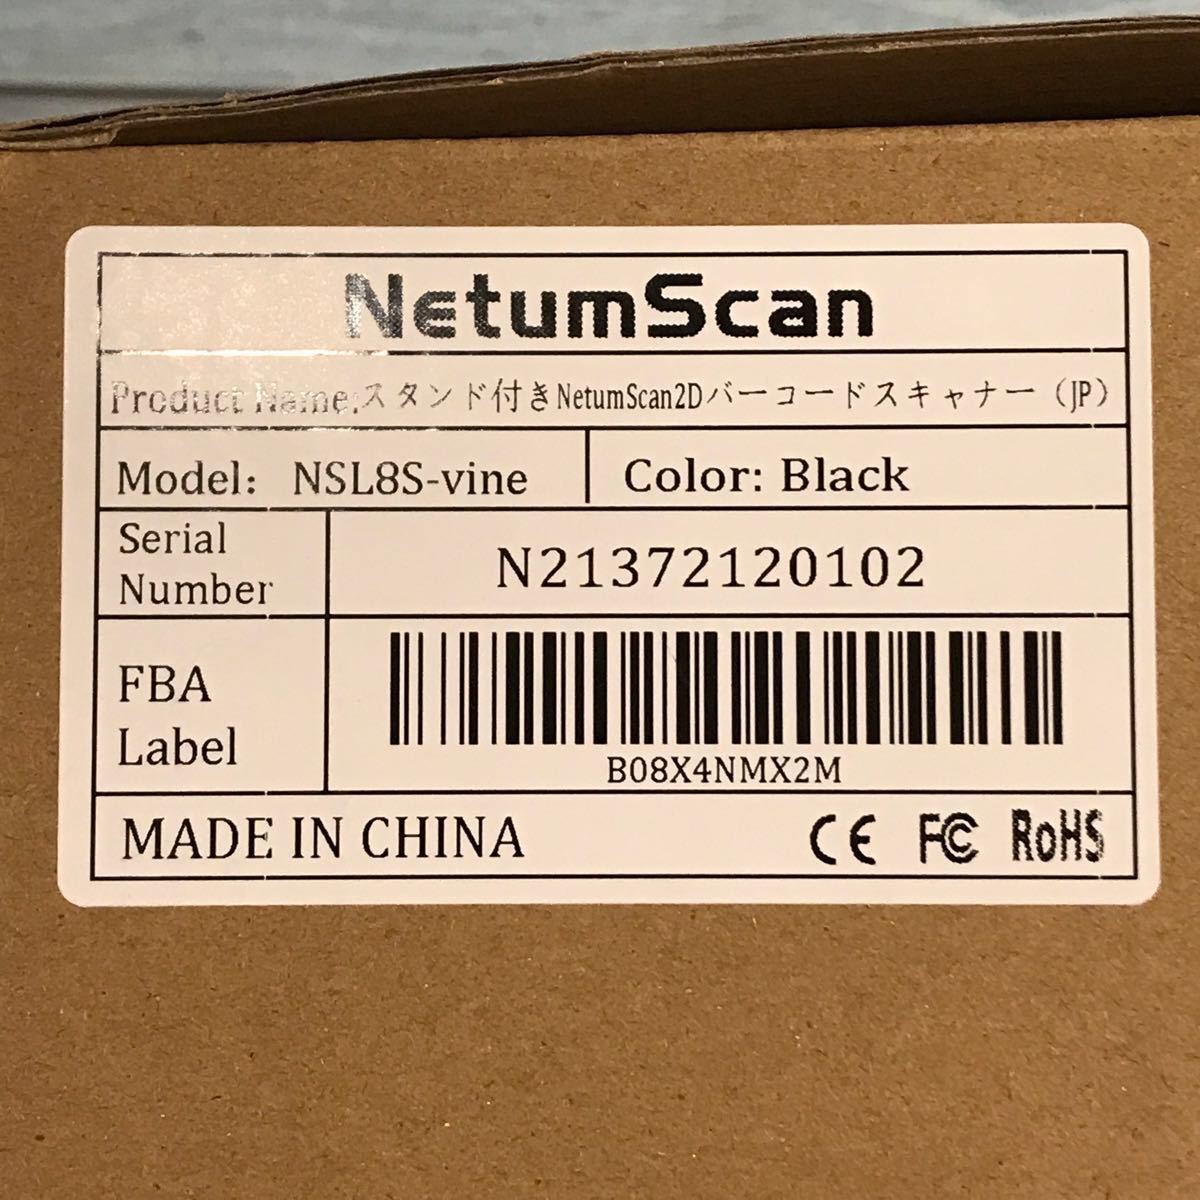 NetumScanアップグレードバージョンスタンド付きワイヤレスバーコードスキャナー